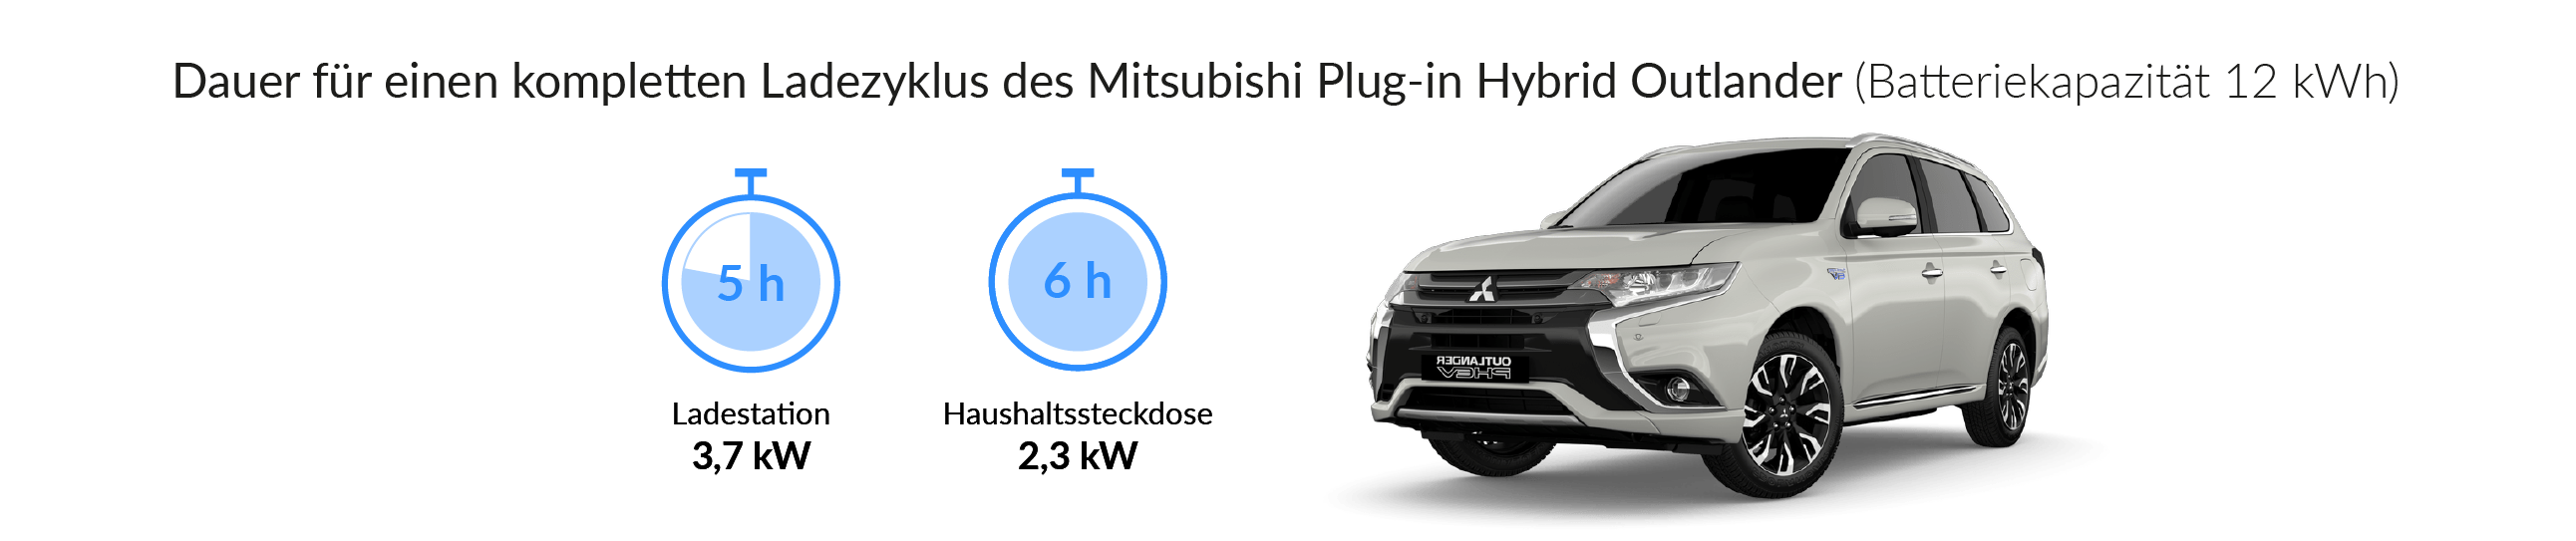 Ladezeiten des Mitsubishi Plug-In Hybrid Outlander